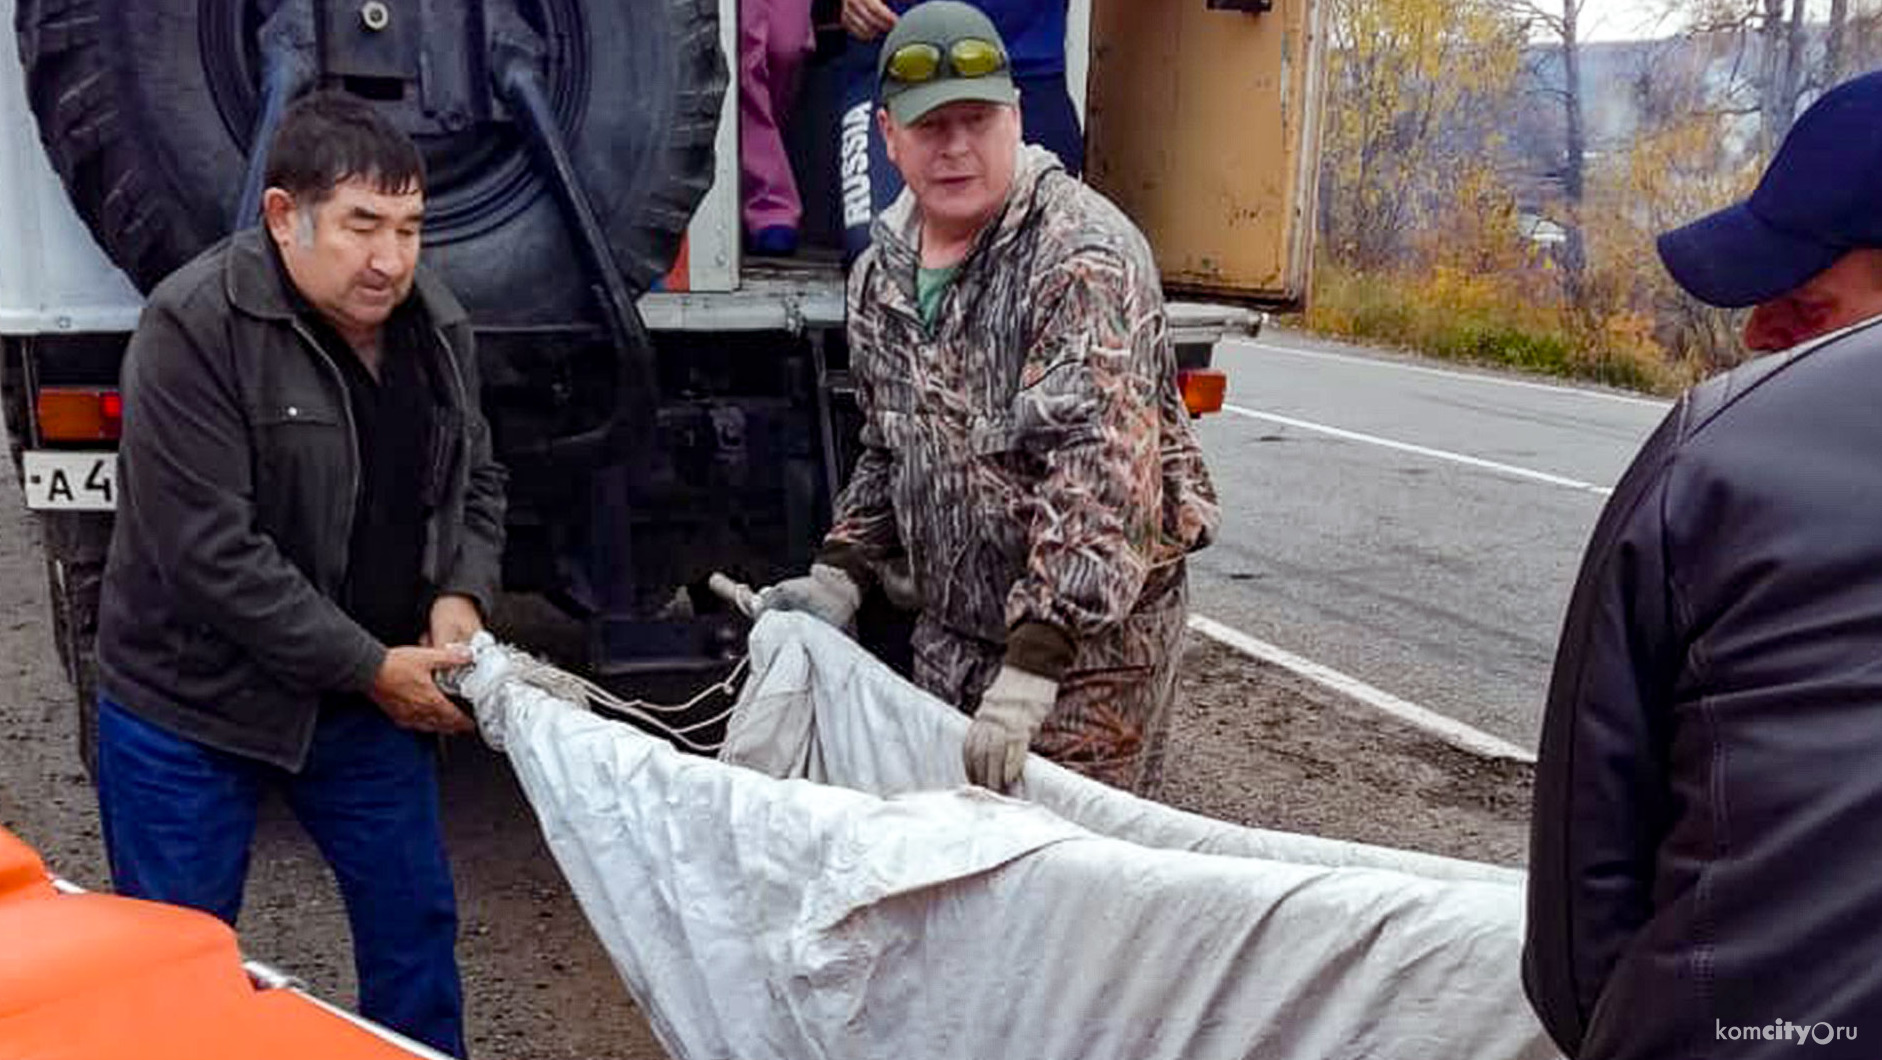 Пропавшего 79-летнего рыбака нашли живым через 4 дня